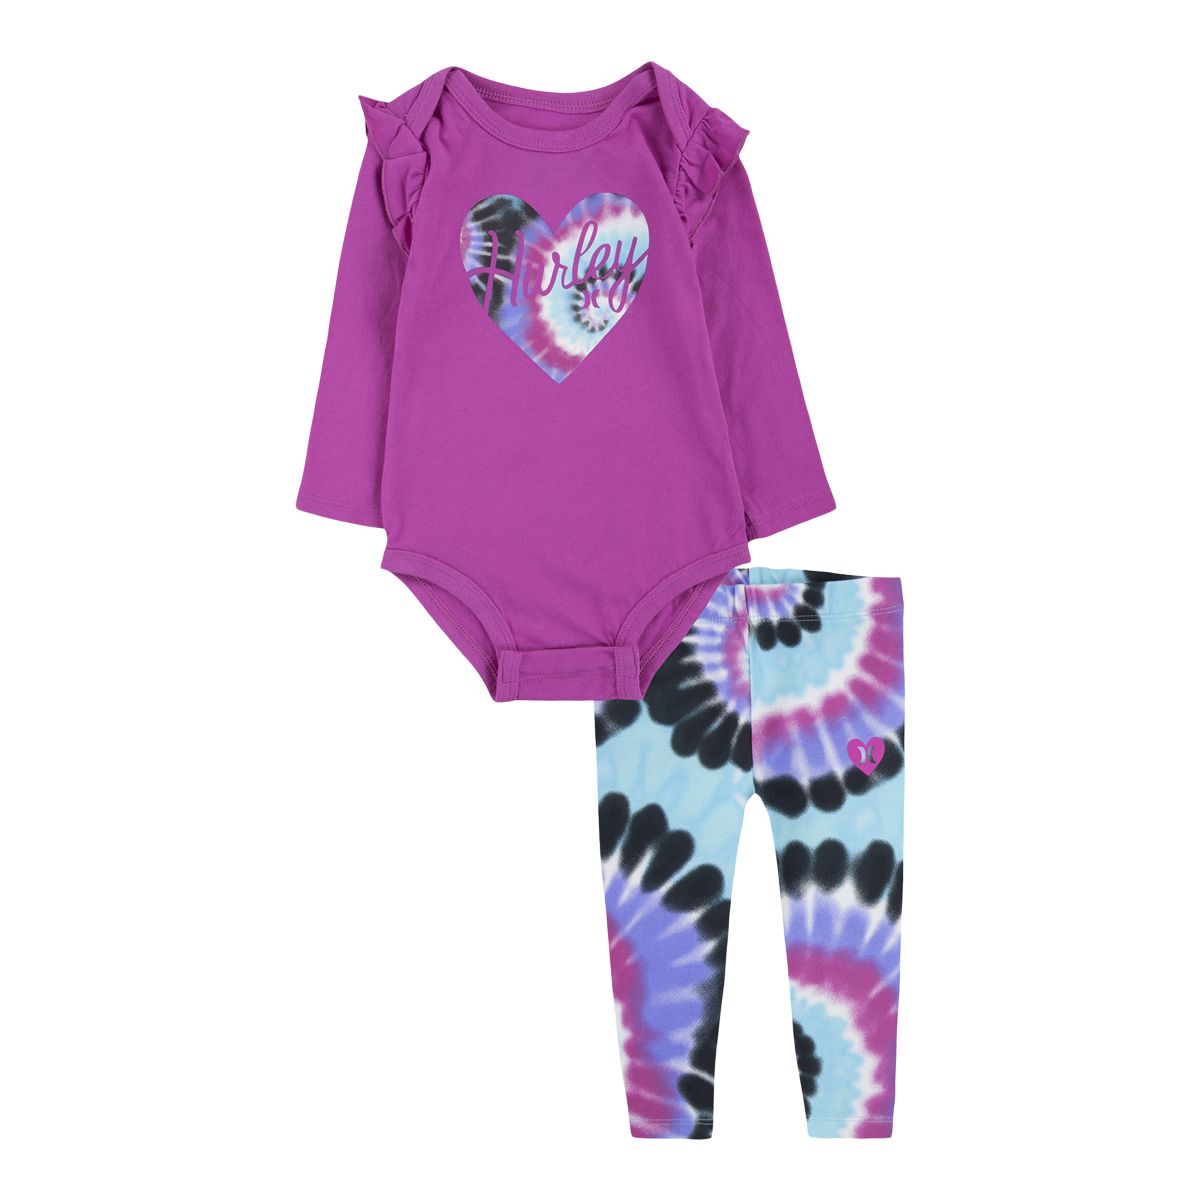 Hurley Infant Girls' Heart Bodysuit And Leggings Set